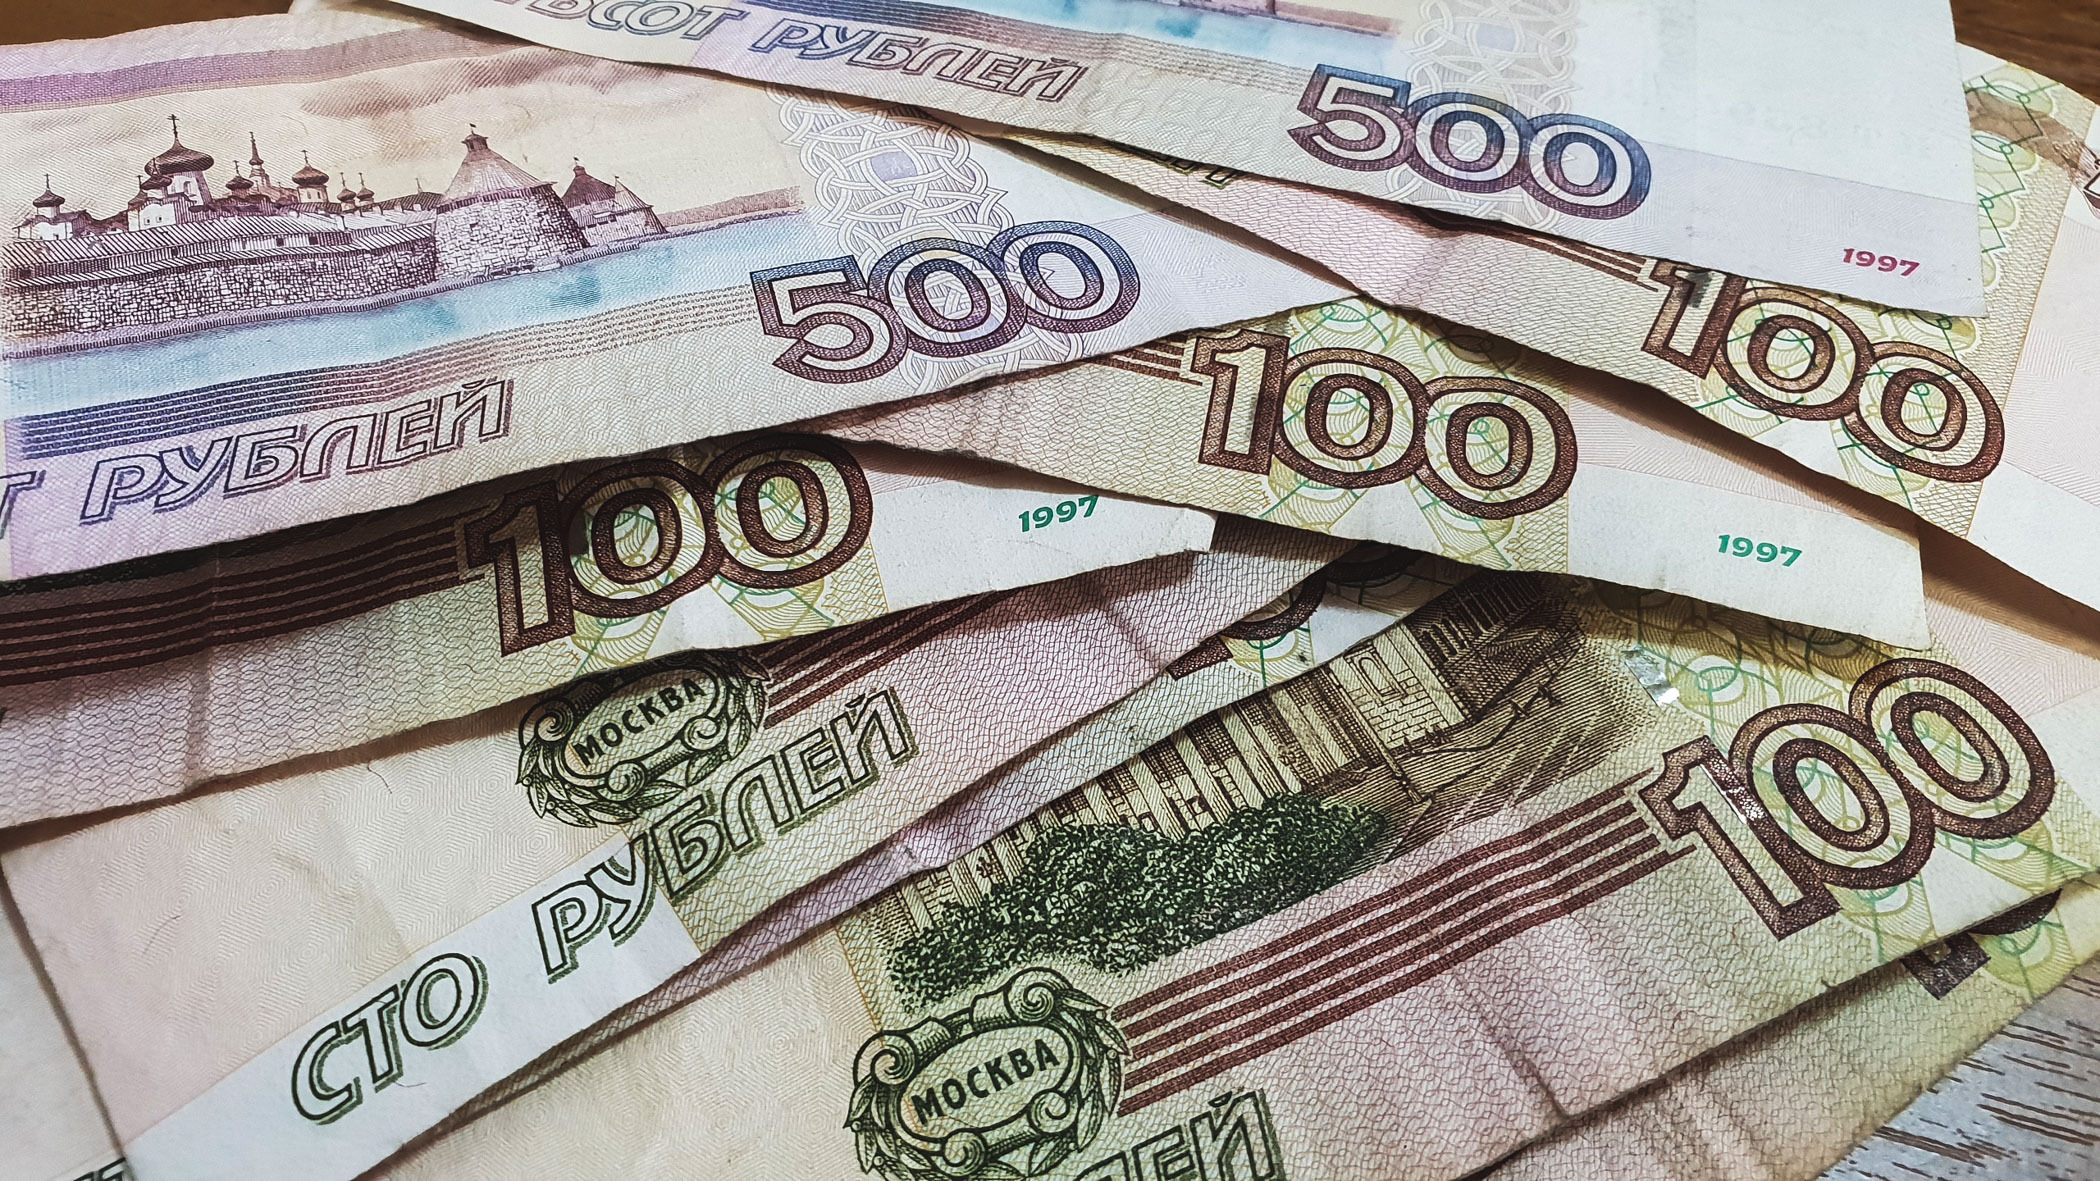 В Татарстане жертва финансовой пирамиды хотела вернуть деньги, но потеряла еще больше